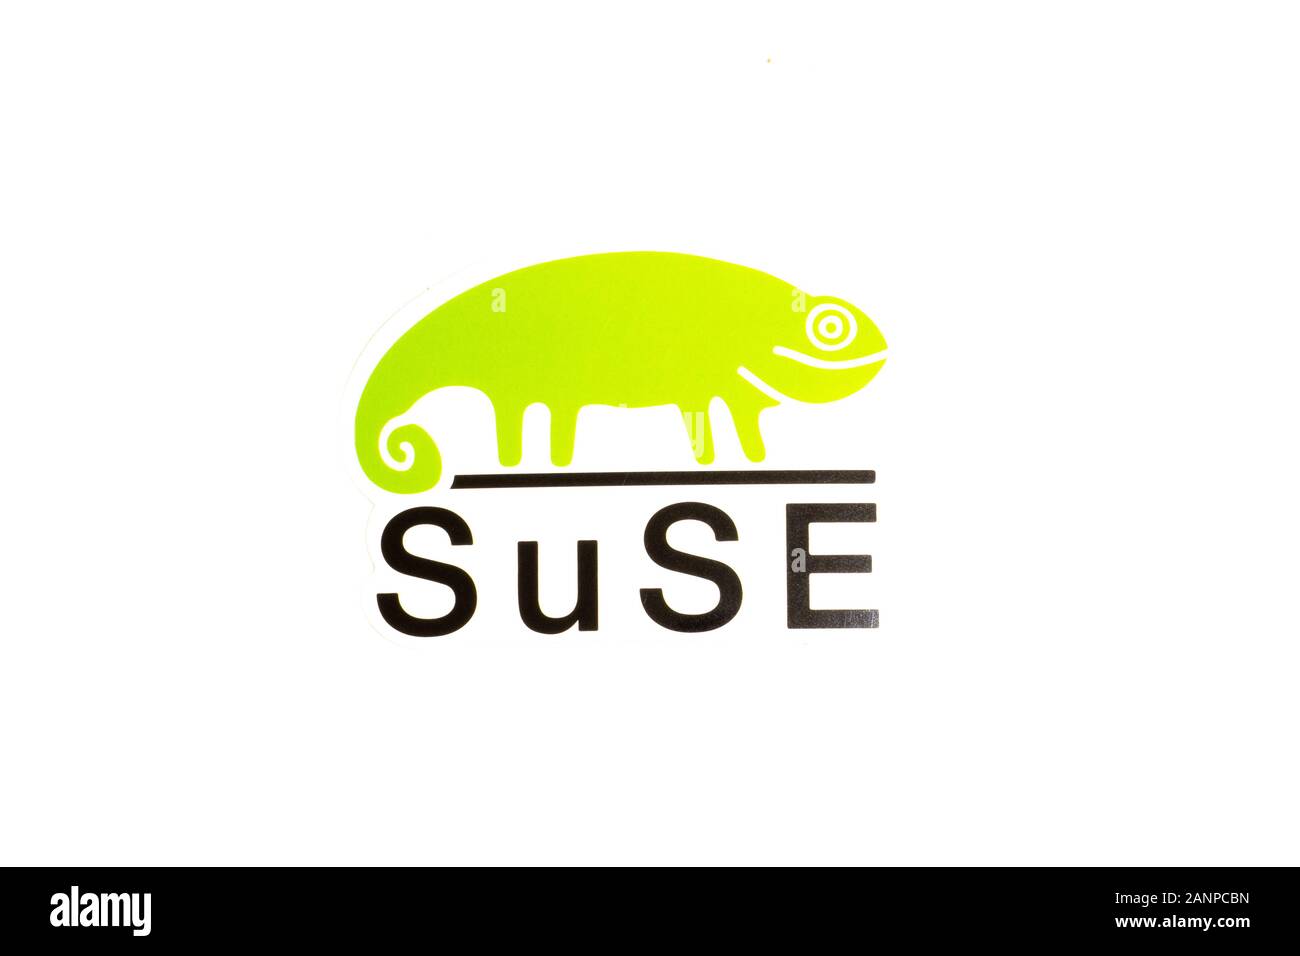 Los Angeles, Californie, États-Unis - 17 janvier 2020: Logo SUSE sur fond blanc, éditorial illustratif Banque D'Images